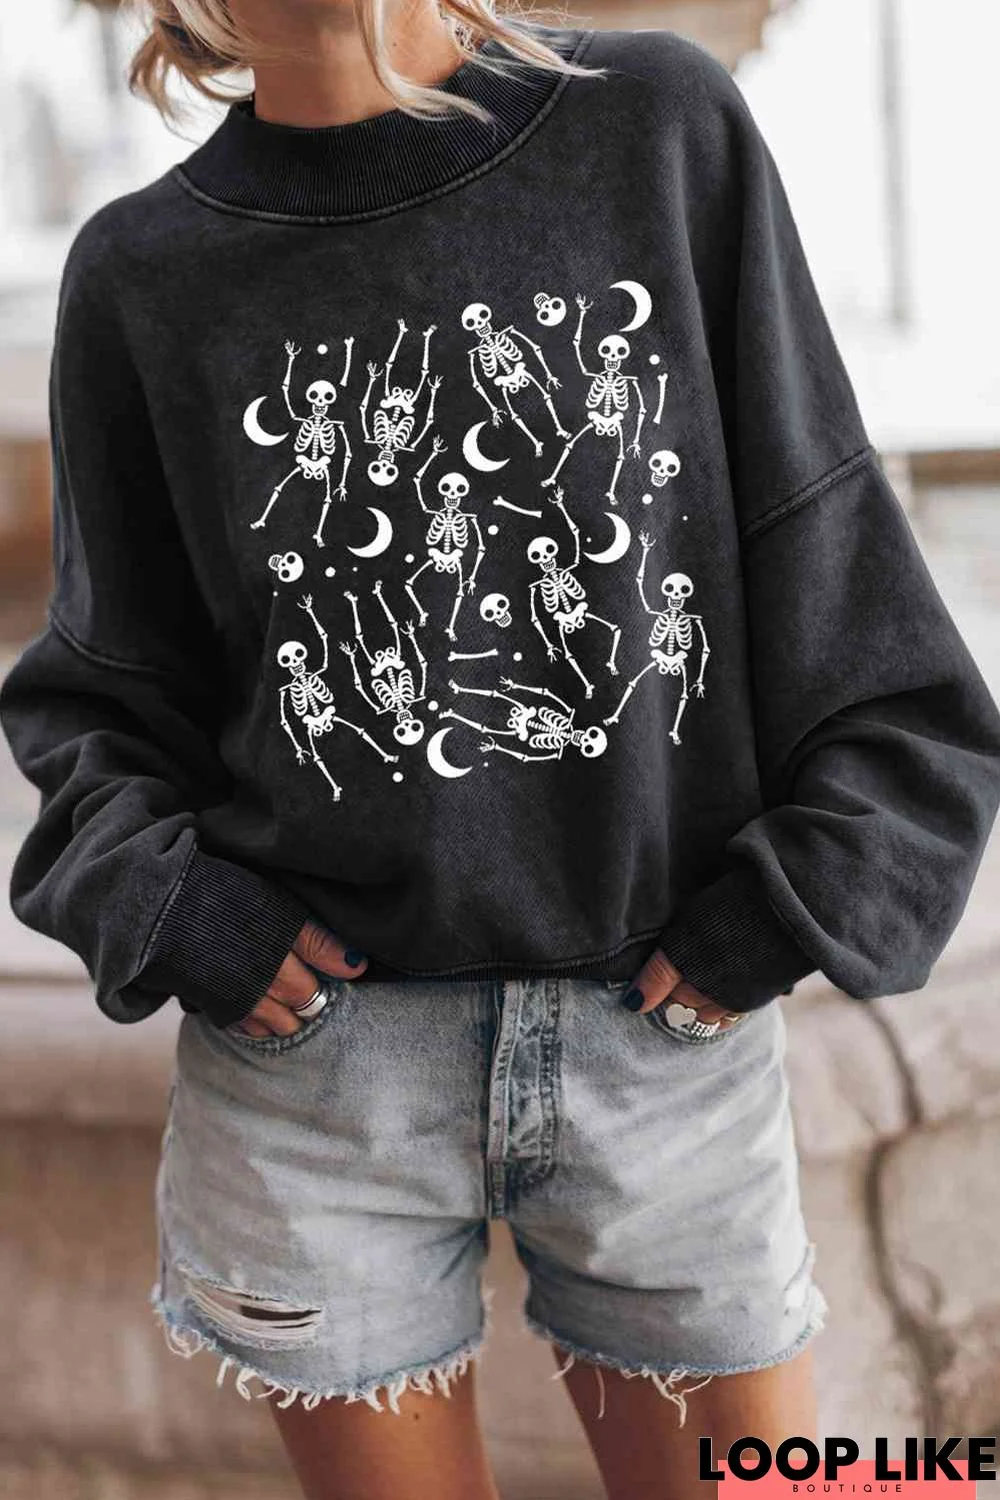 Dancing Skeletons Graphic Sweatshirt